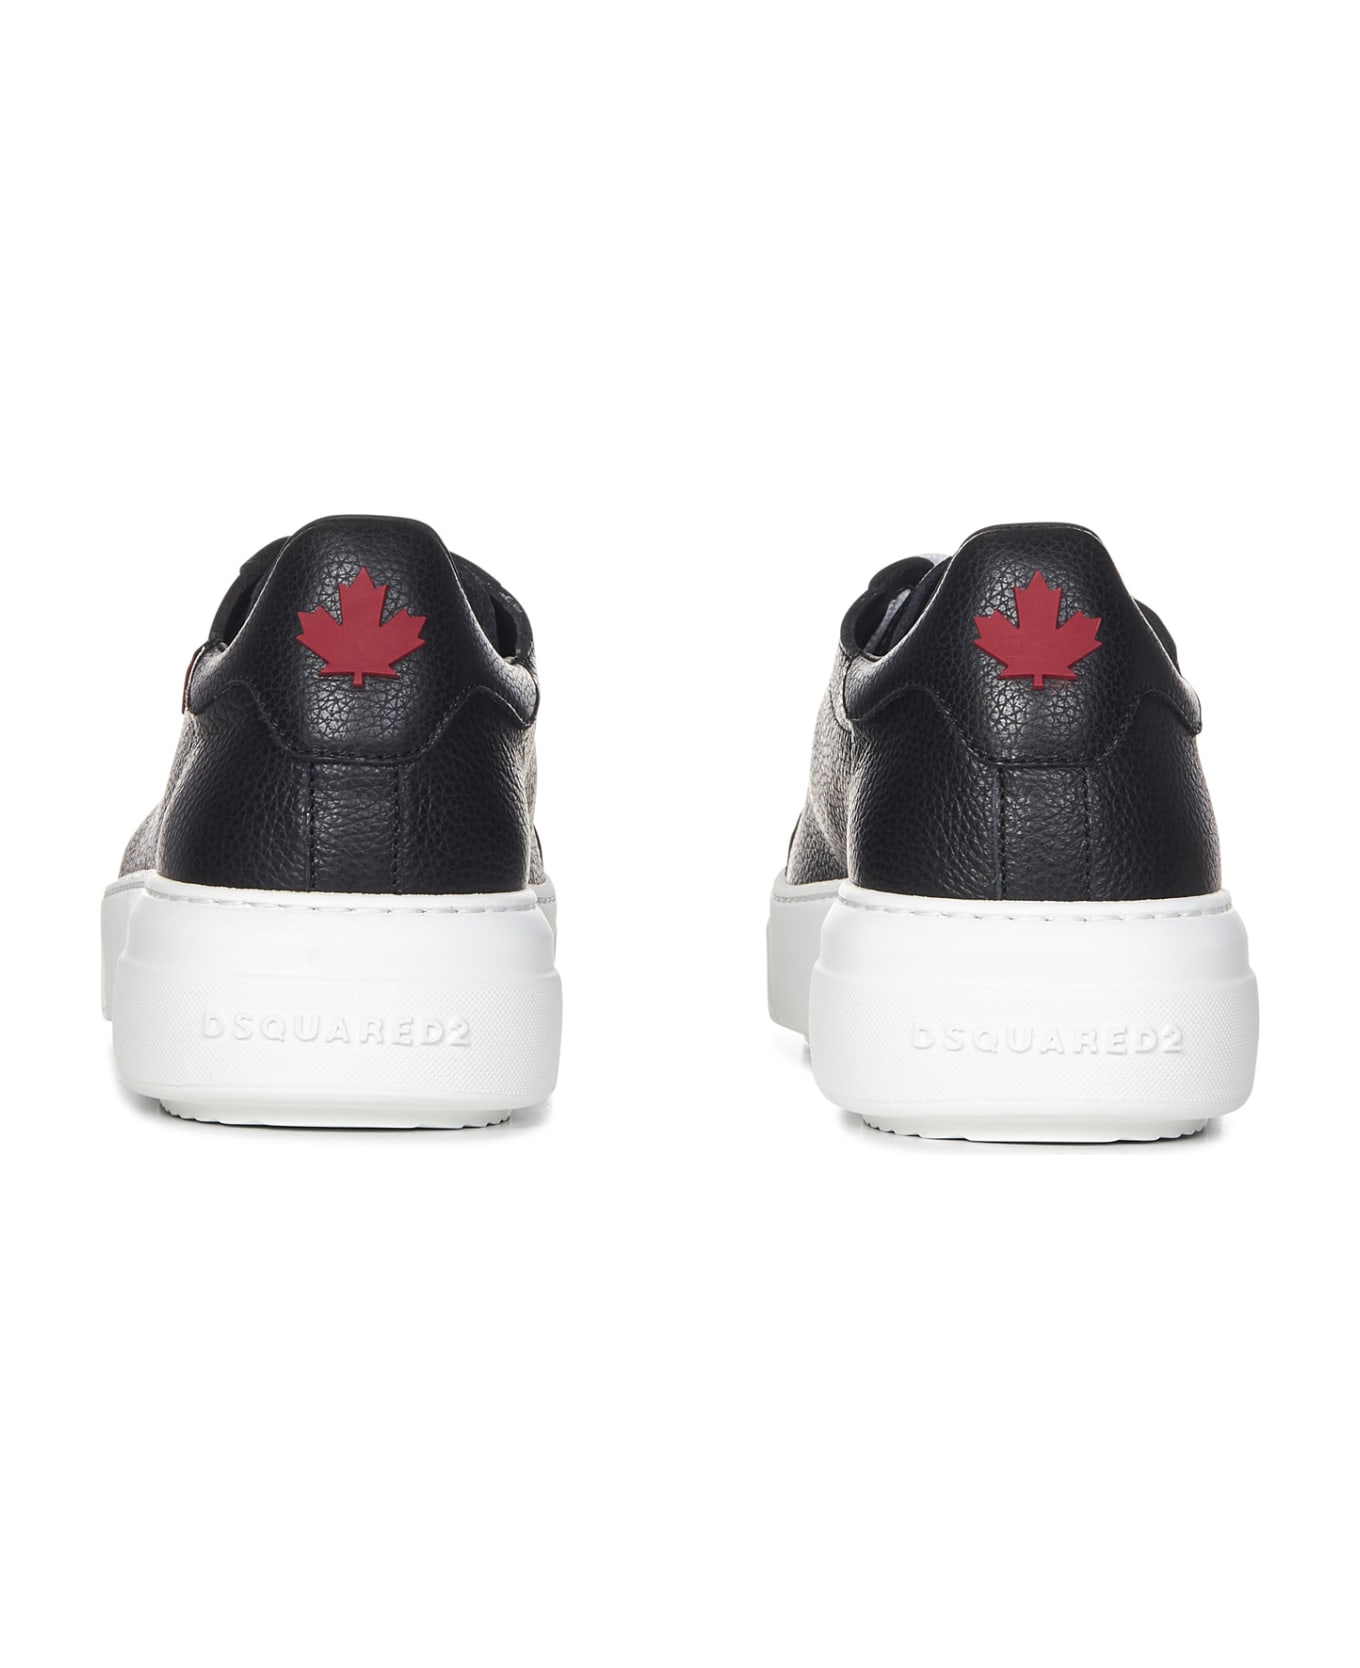 Dsquared2 Bumper Sneakers - White/Black